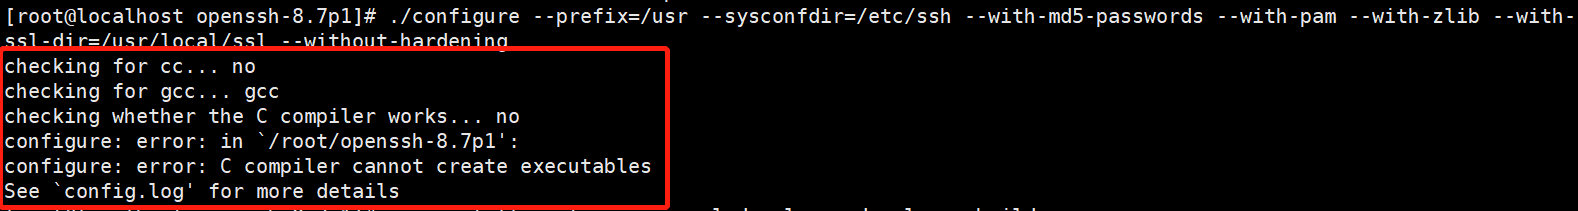 【Linux】 OpenSSH_7.4p1 升级到 OpenSSH_8.7p1（亲测无问题，建议收藏）